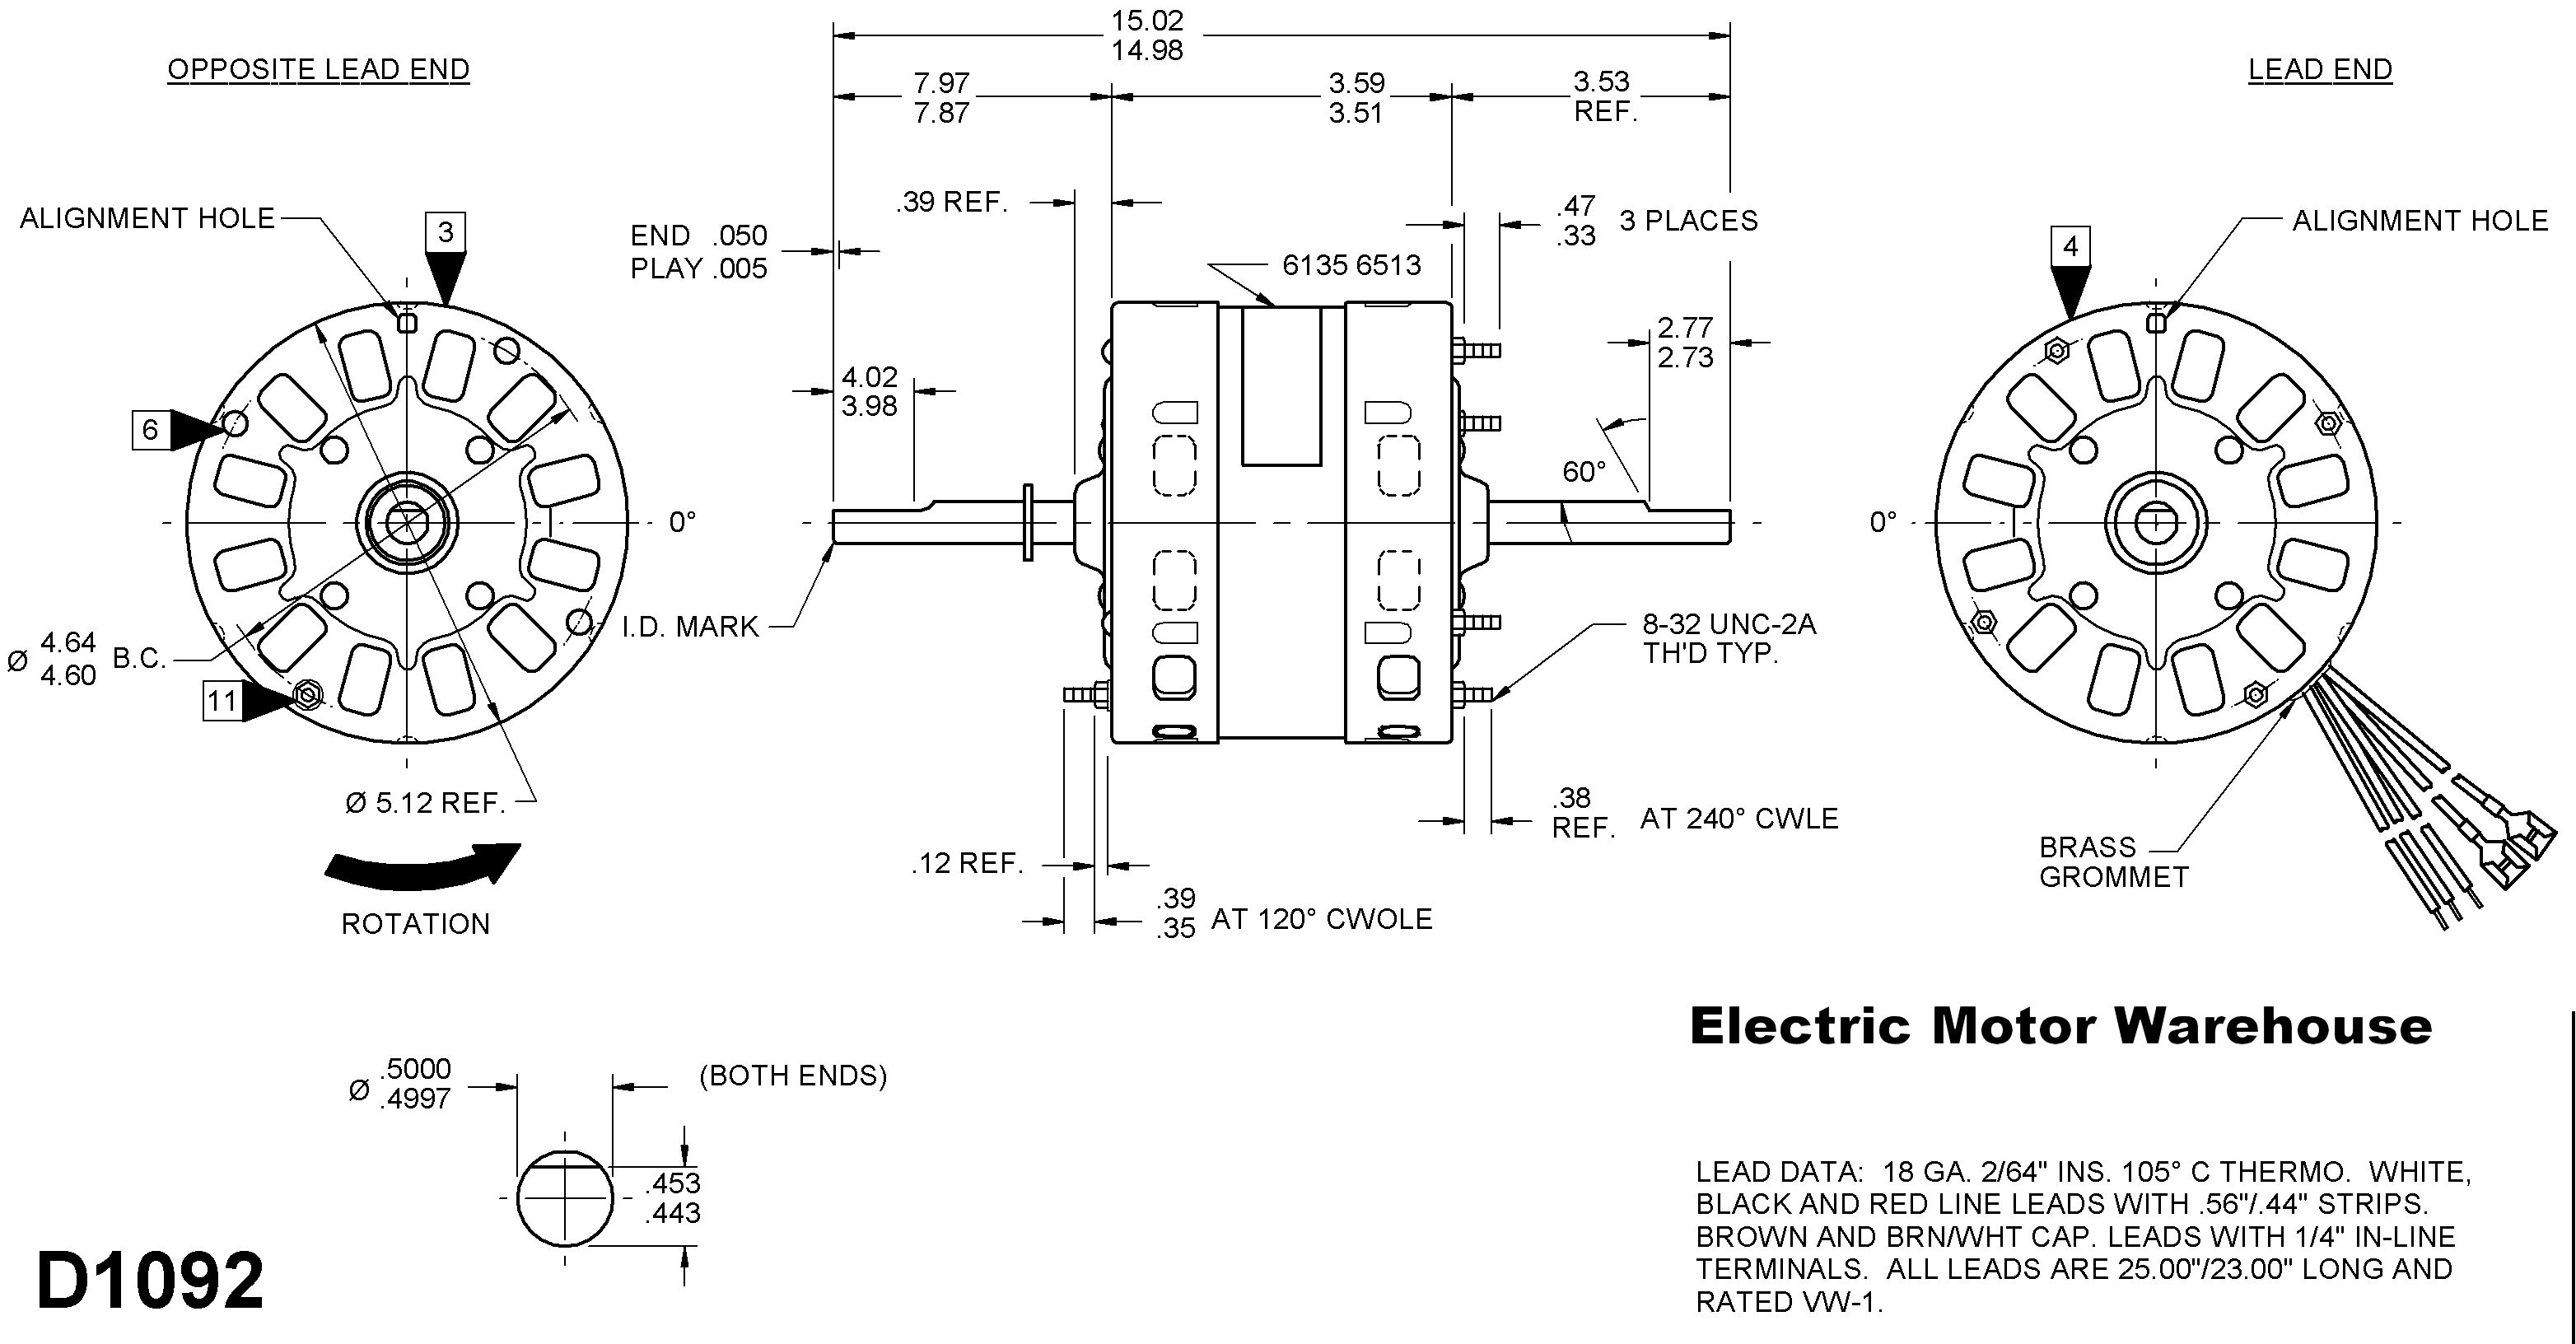 Baldor Motor Wiring Diagrams Single Phase New Dayton Electric Motor Wiring Diagram & Gallery Leeson Motor